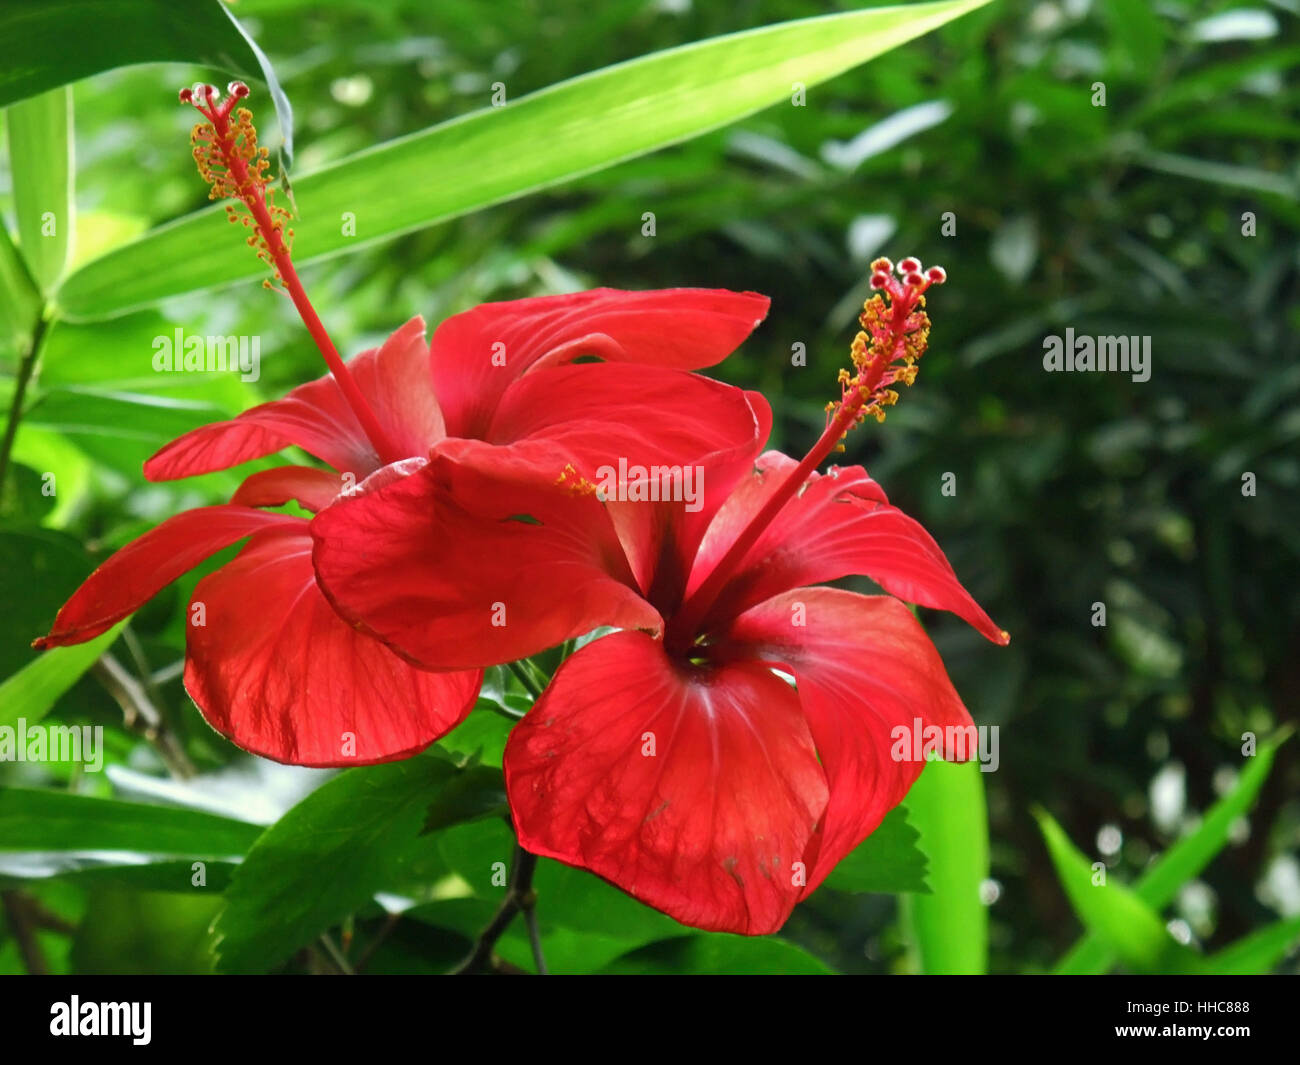 Couleur rouge vif des fleurs tropicales dans une ambiance naturelle verte leavy Banque D'Images